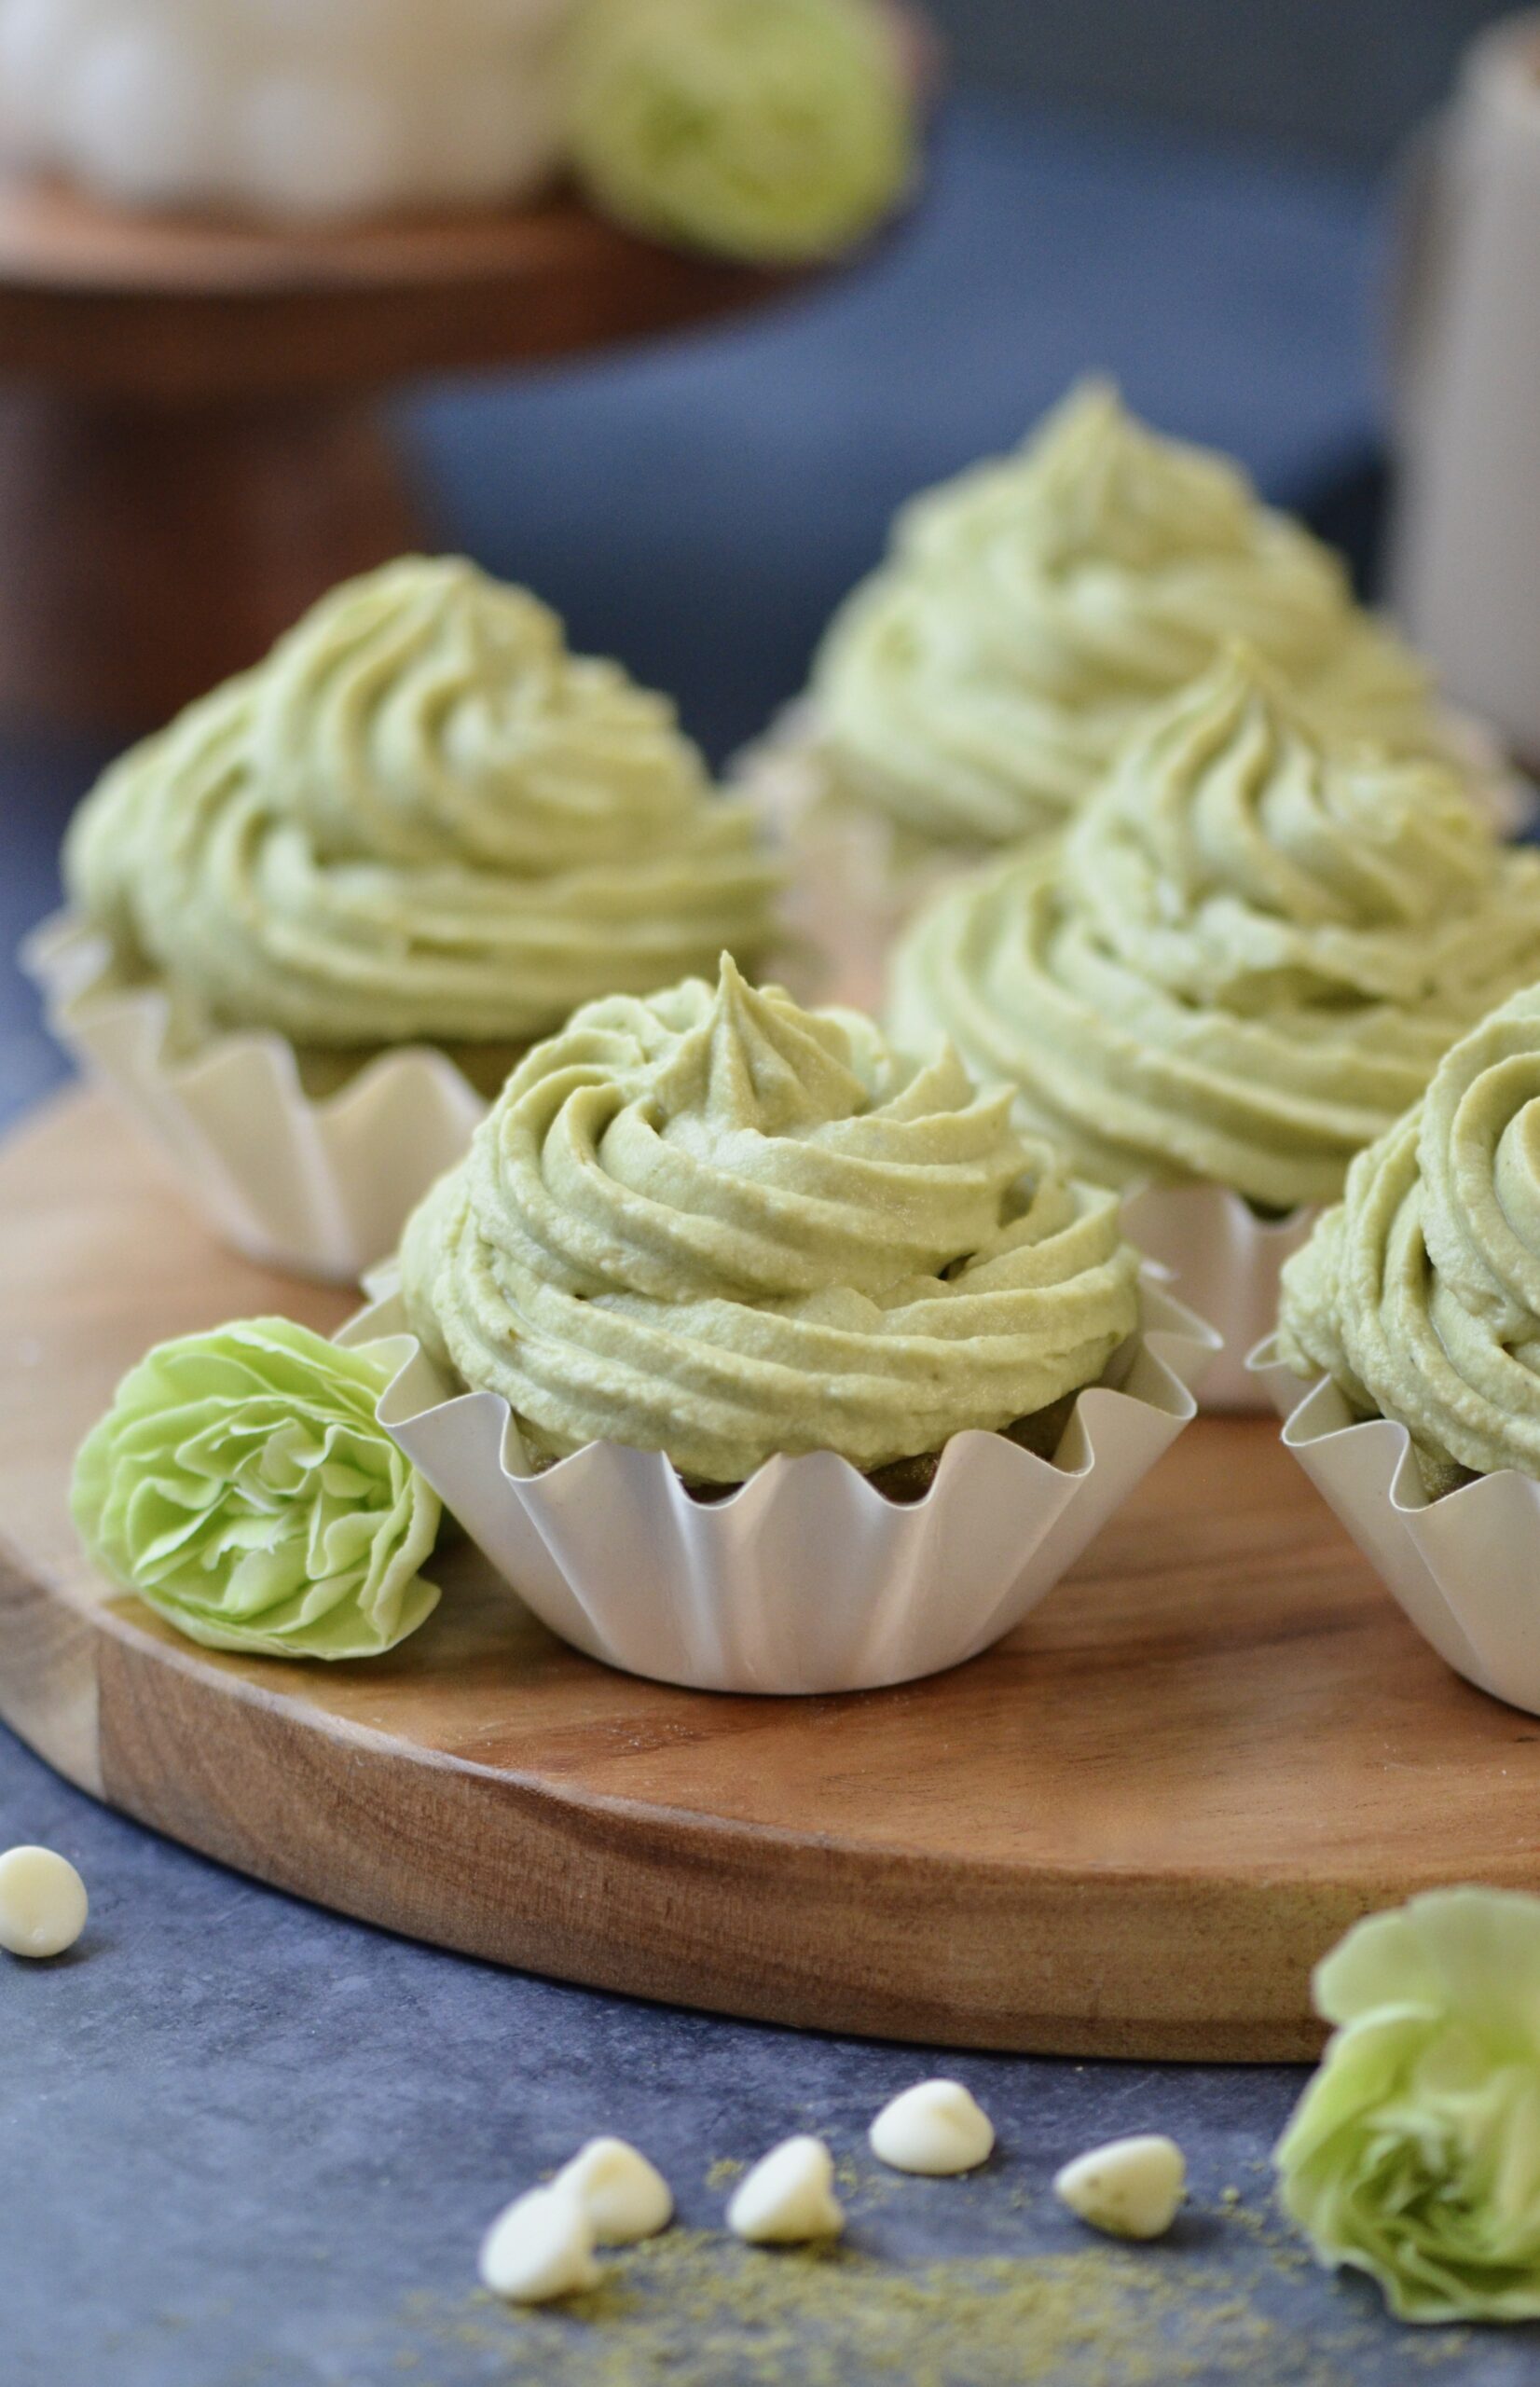 Matcha Green Tea Cupcakes!